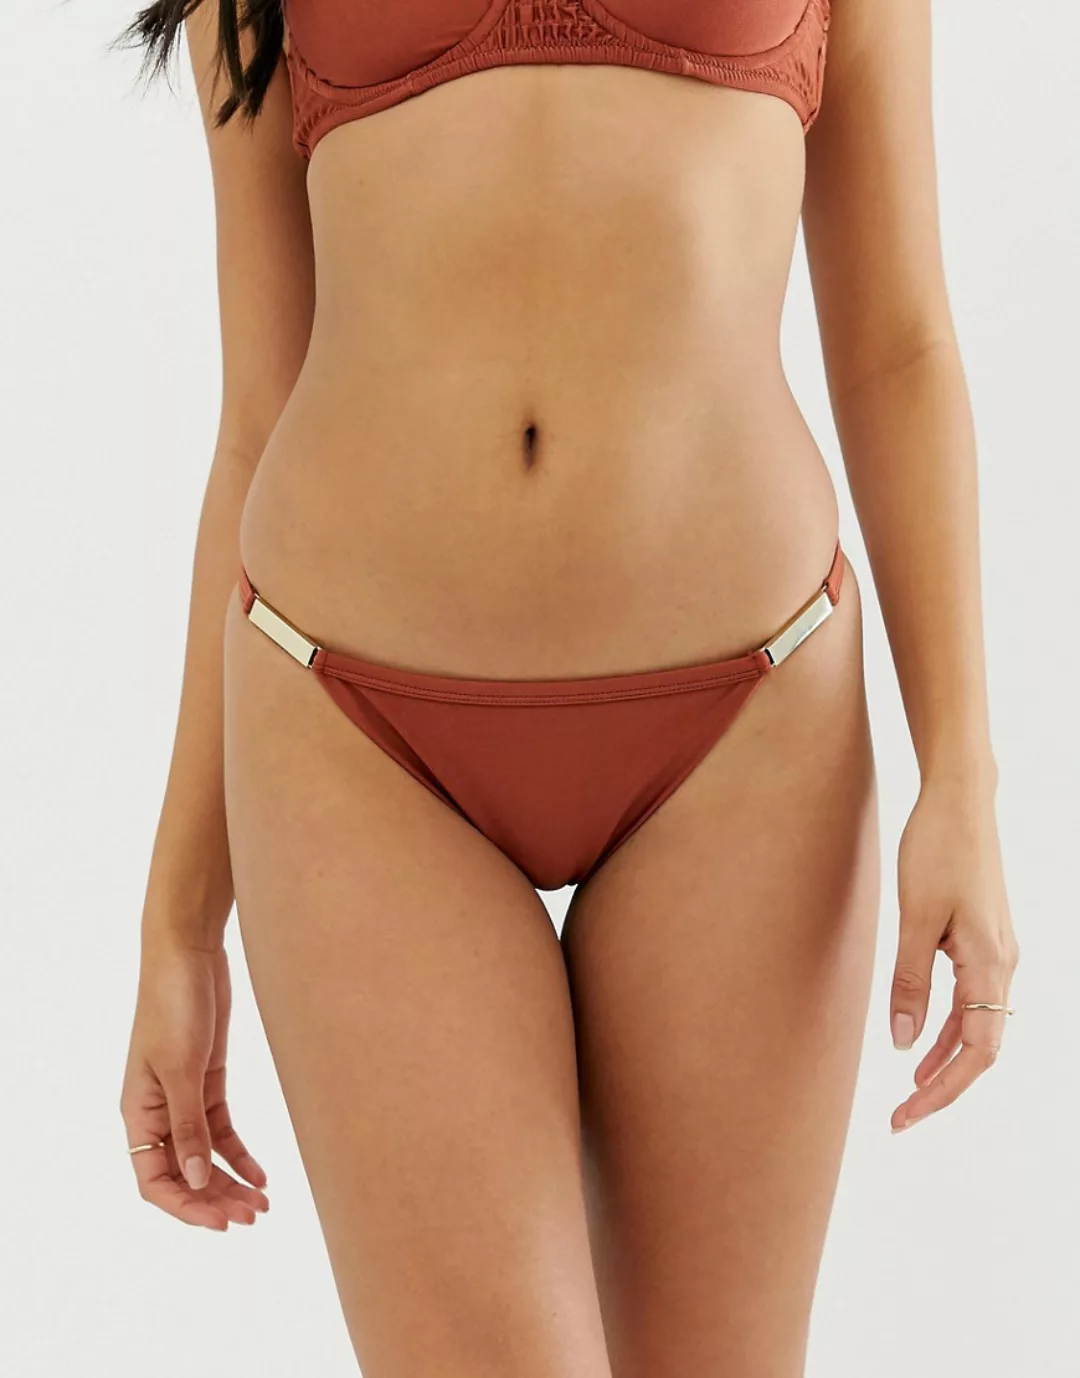 River Island – Braune Bikinihose mit Riemendesign und goldener Verzierung günstig online kaufen